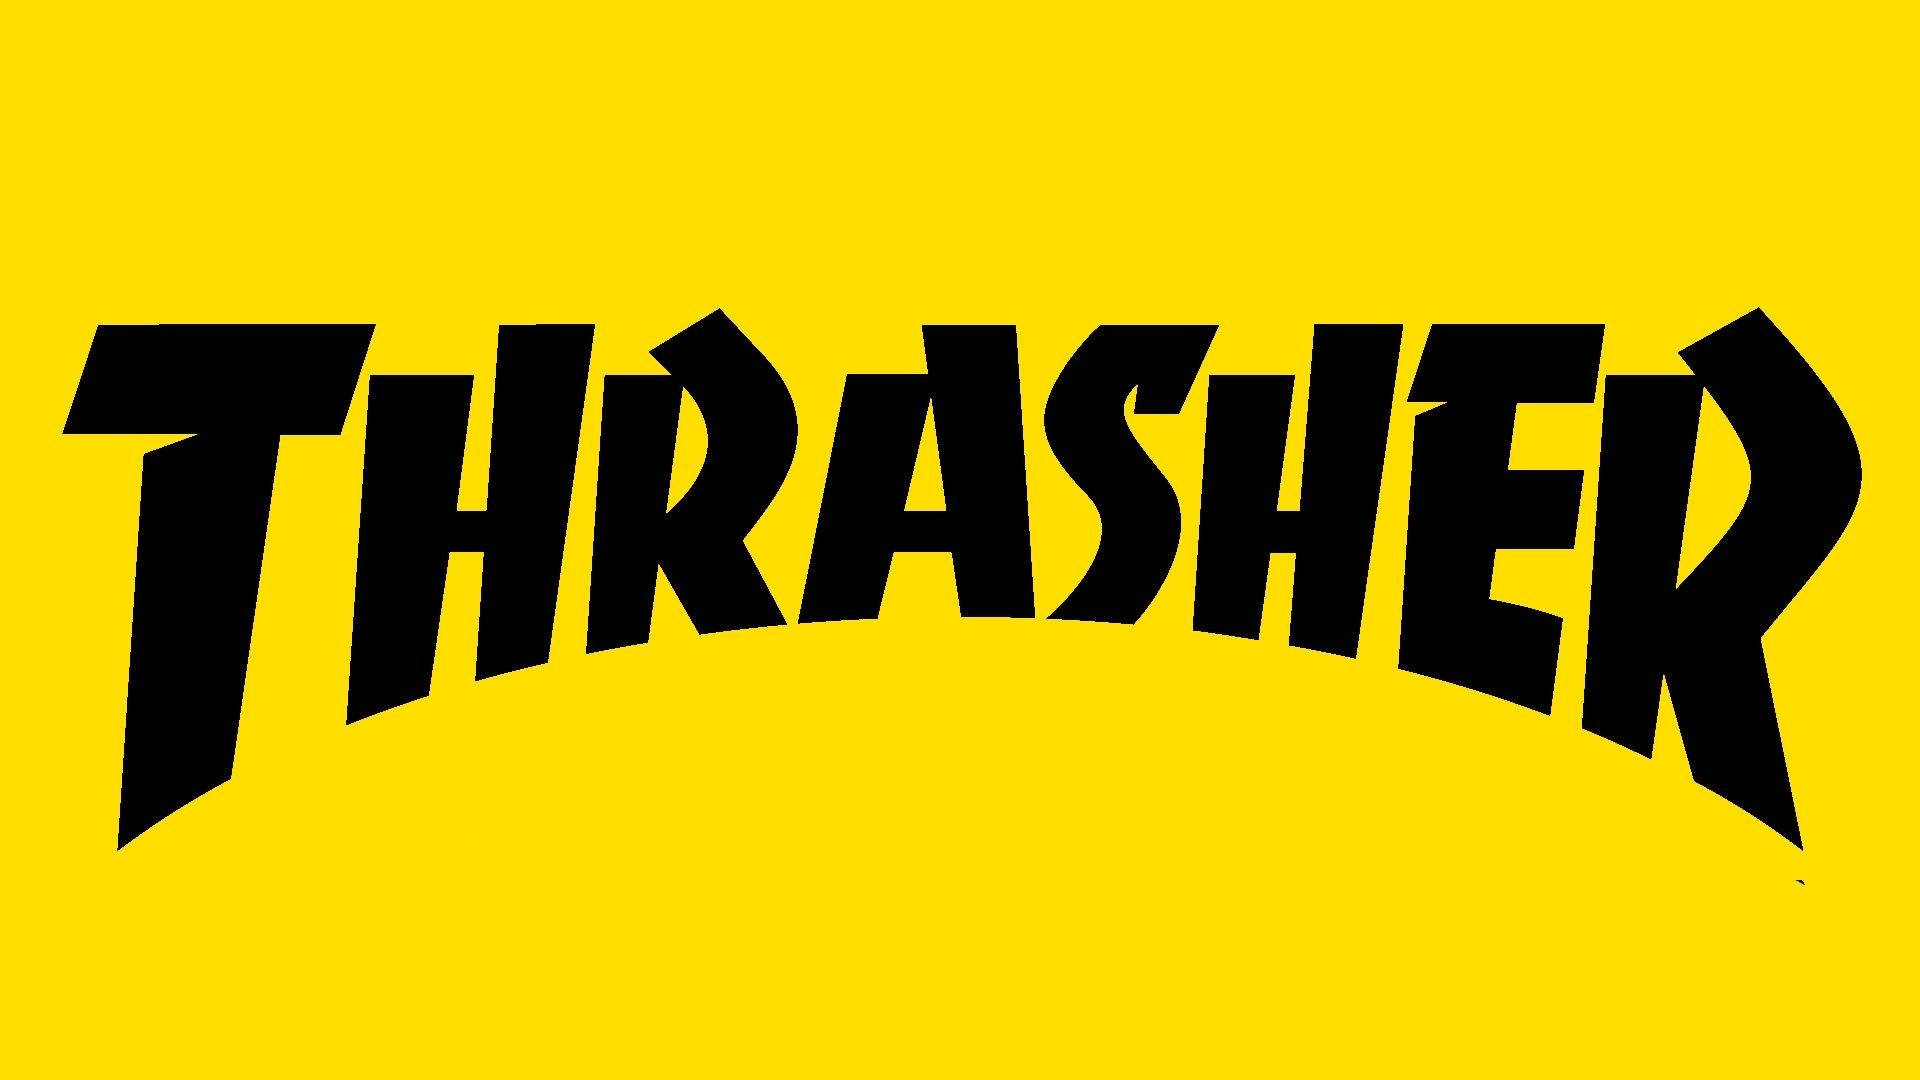 Intense Thrasher Magazine Logo Background